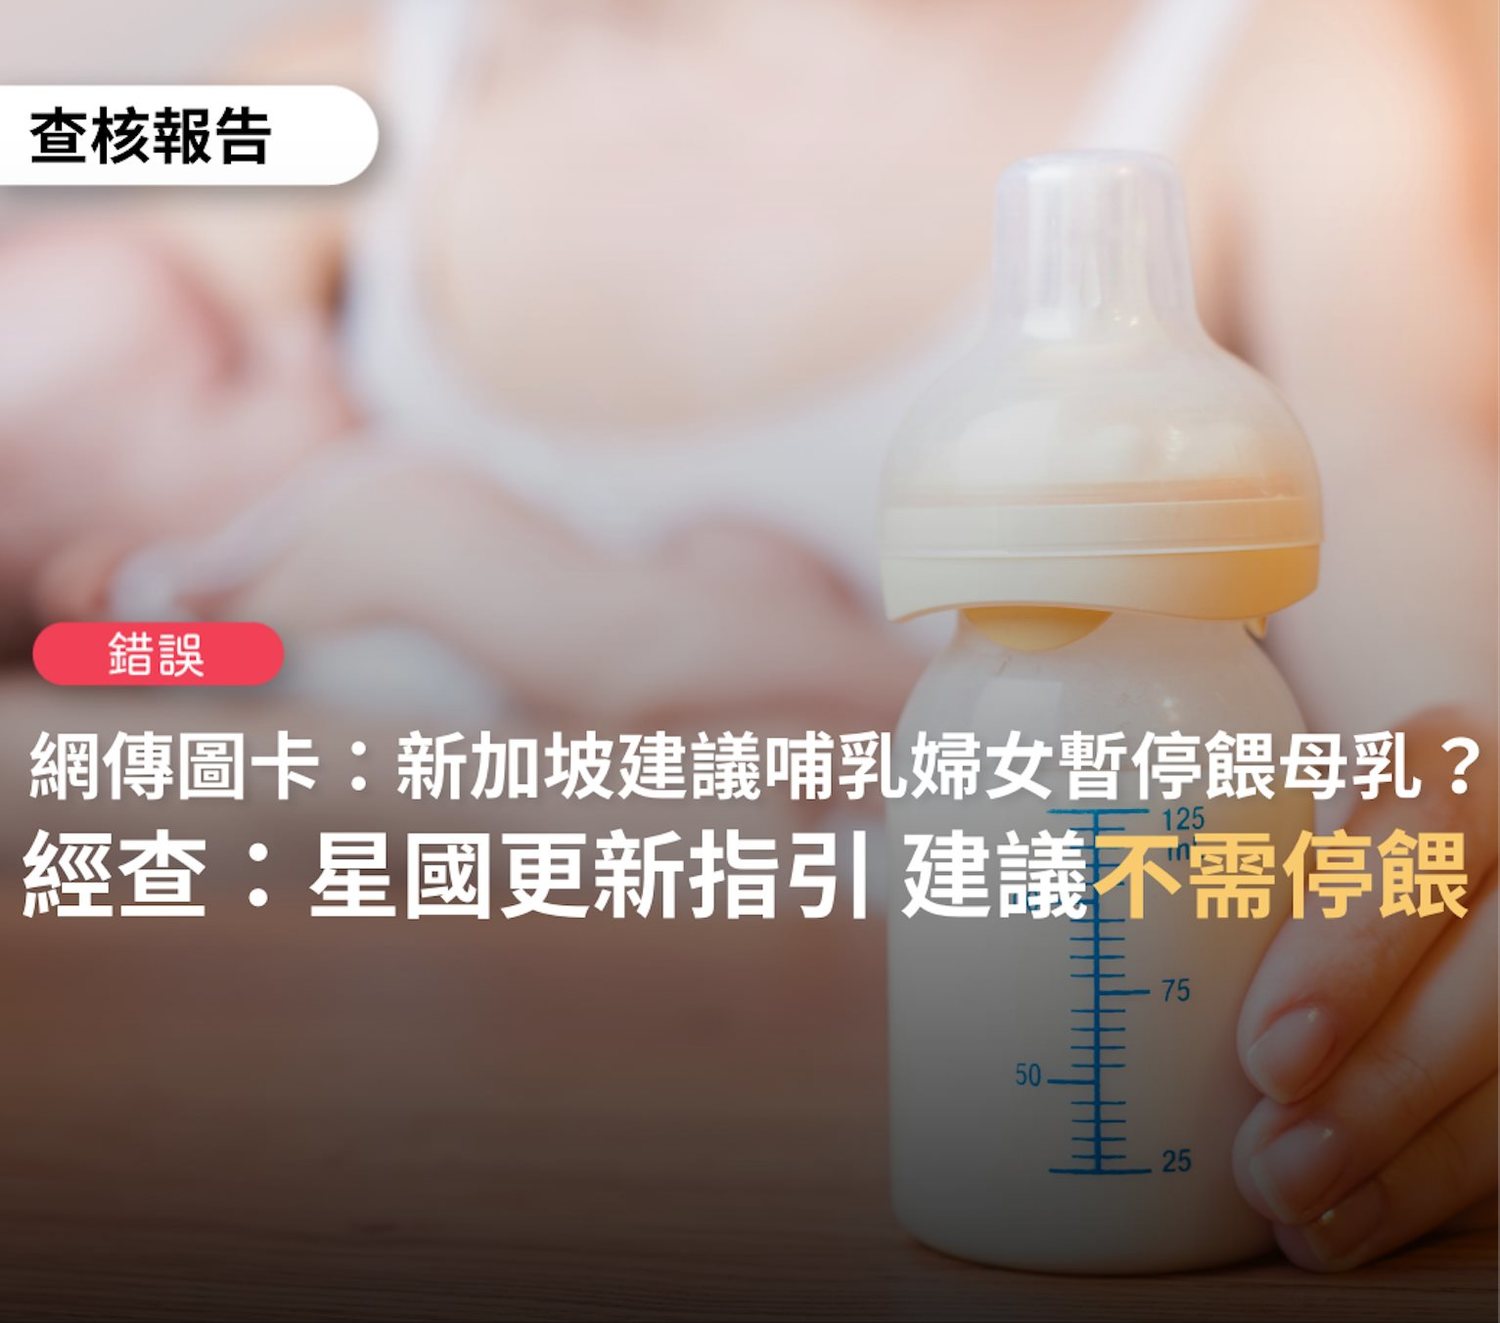 網傳「星國建議接種暫緩哺乳5至7天」 查核中心：資料已更新 可餵母乳